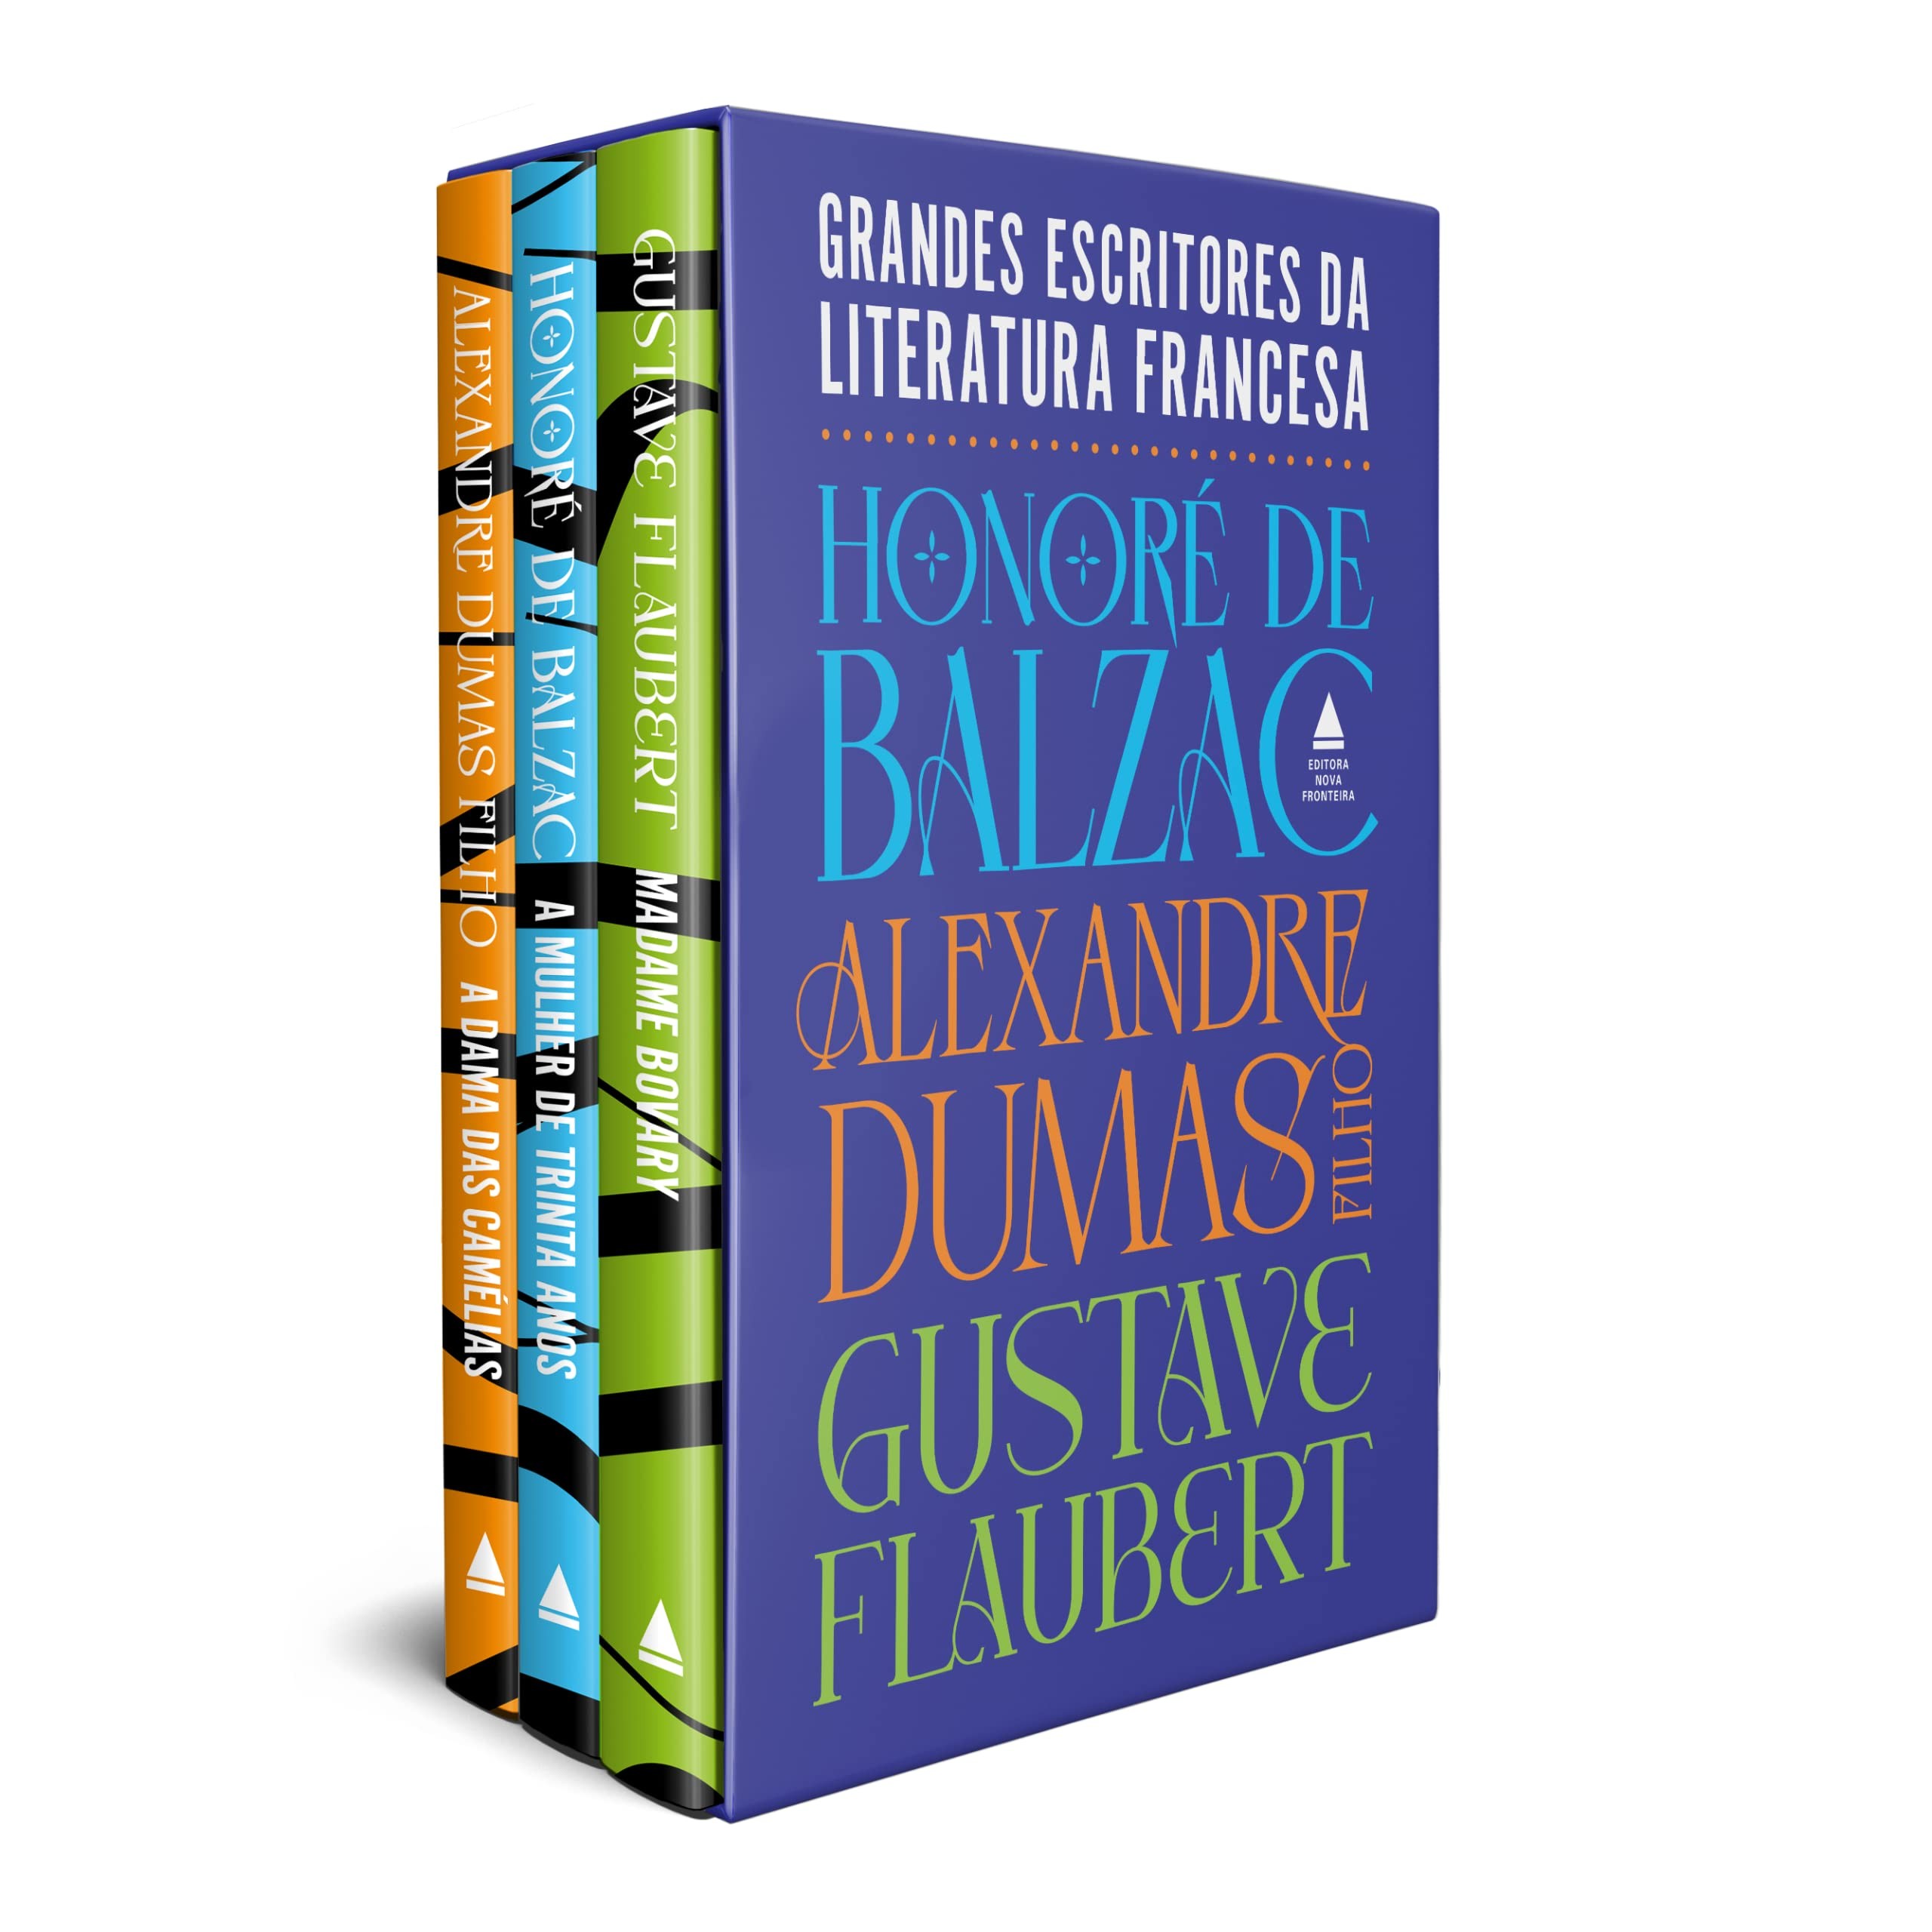 Box Grandes Escritores da Literatura Francesa (Nova Fronteira, 800 páginas, R$ 219,90) (Foto: Divulgação)